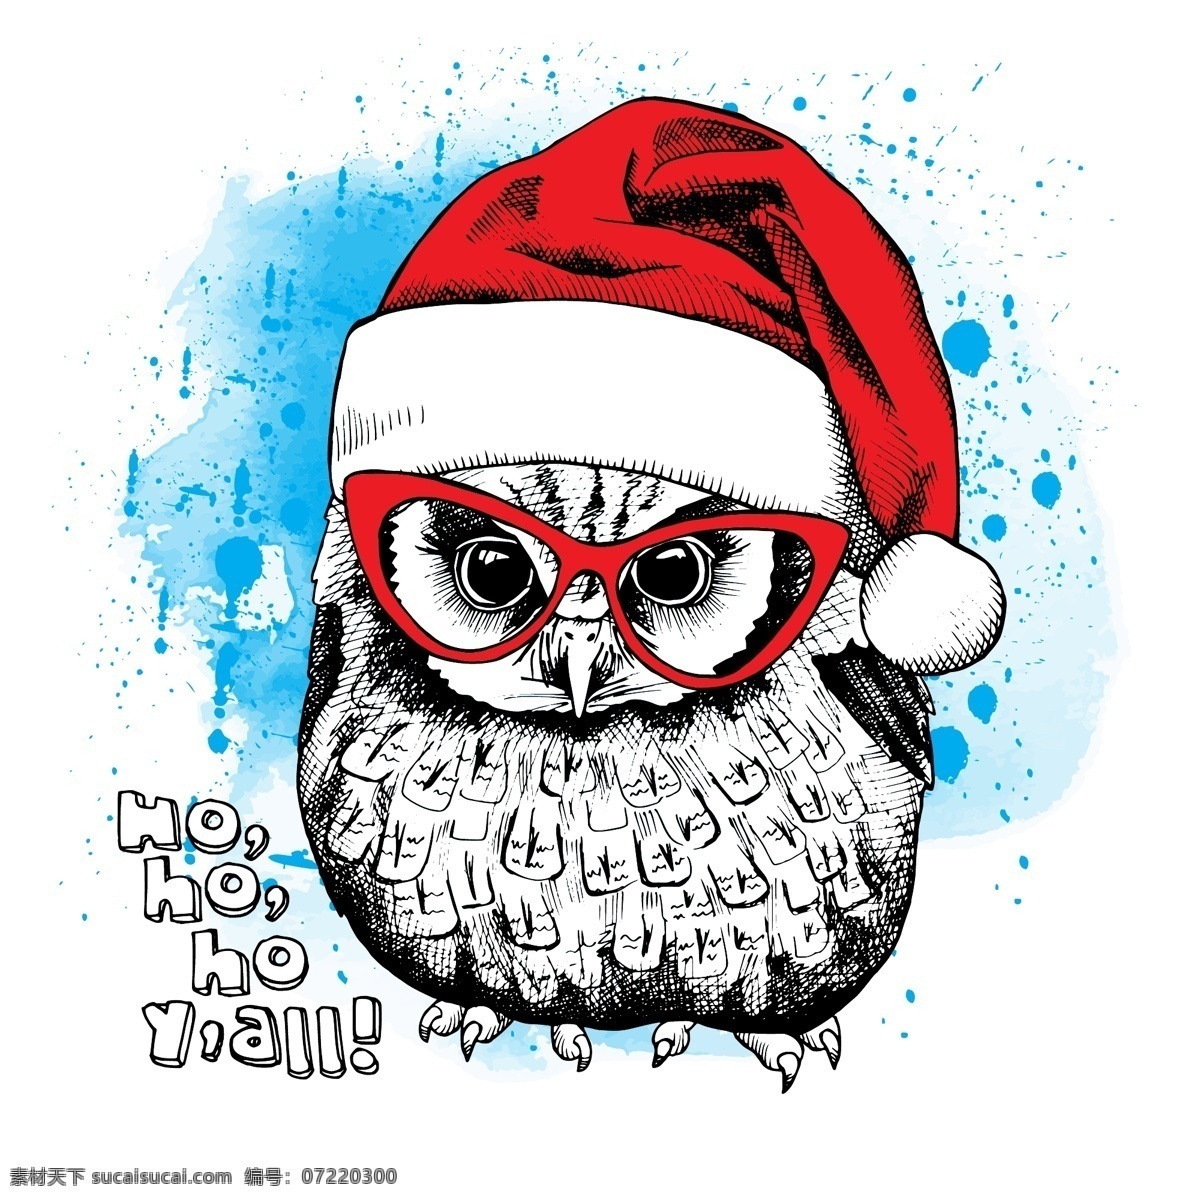 趣味 卡通 可爱 猫头鹰 插画 动物 手绘 圣诞帽